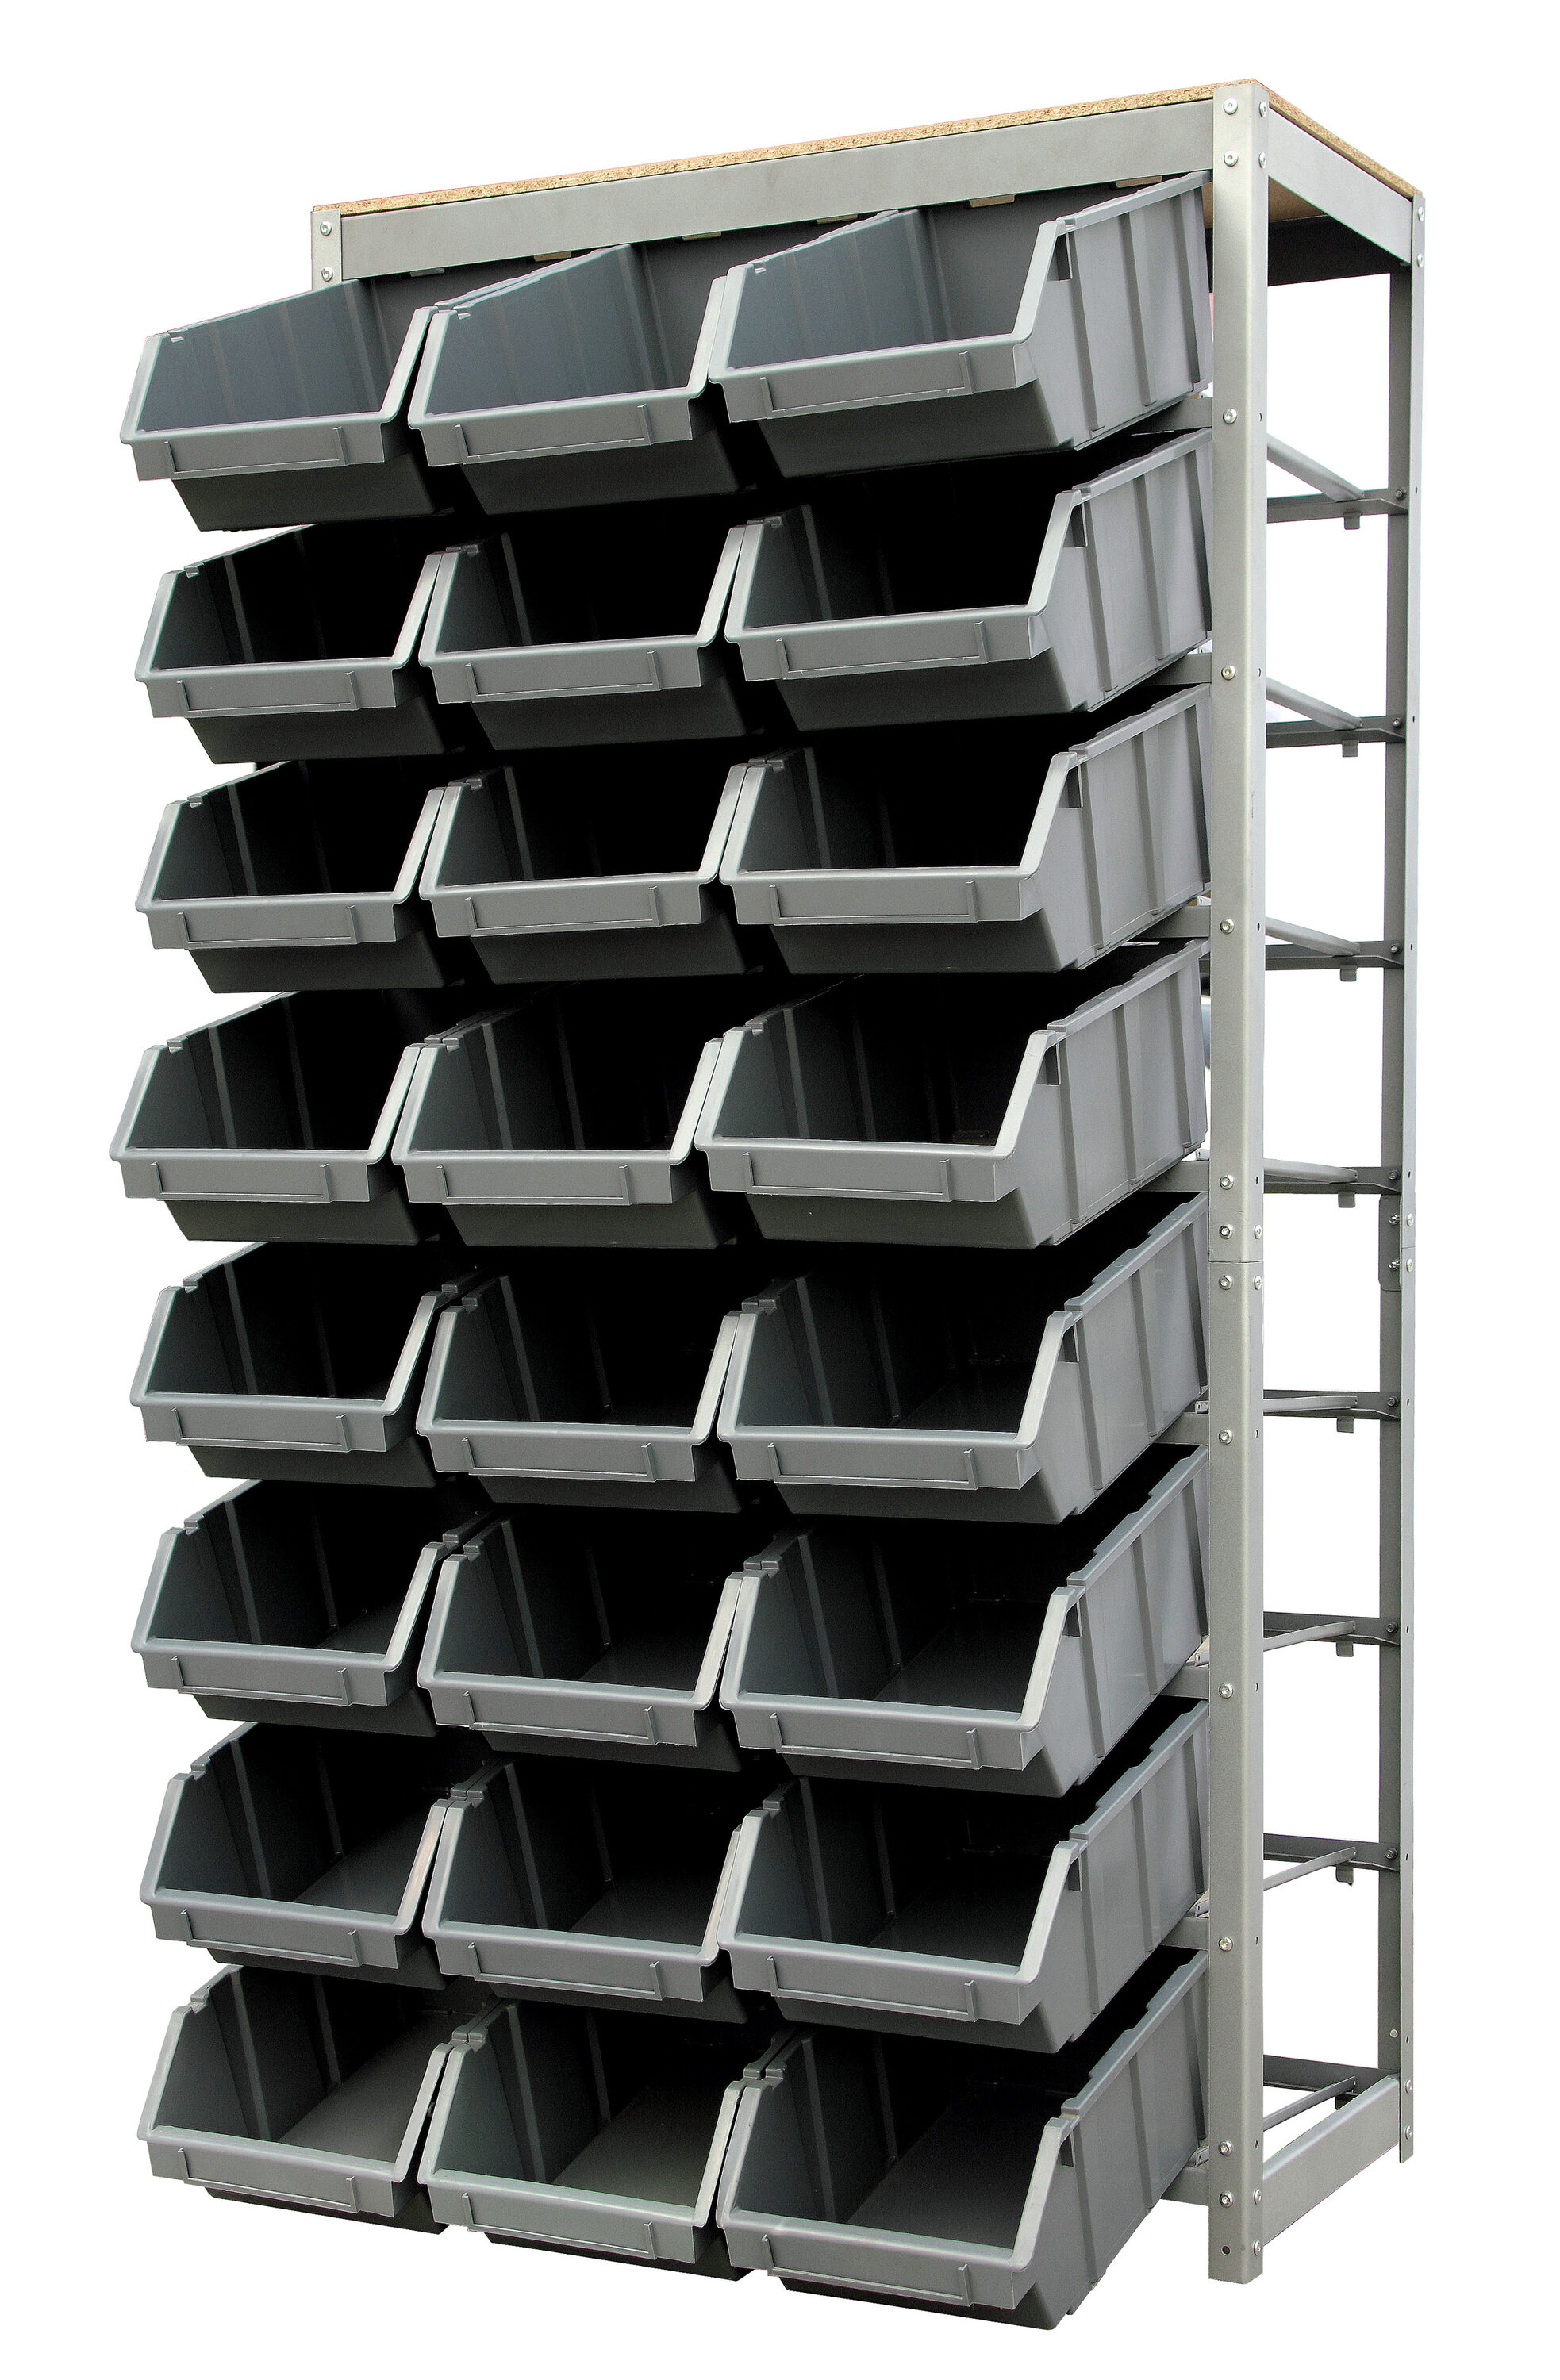 King's Rack Bin Rack Storage System Heavy Duty Steel Rack Organizer Shelving Unit w/ 24 Plastic Bins in 8 Tiers, Gray